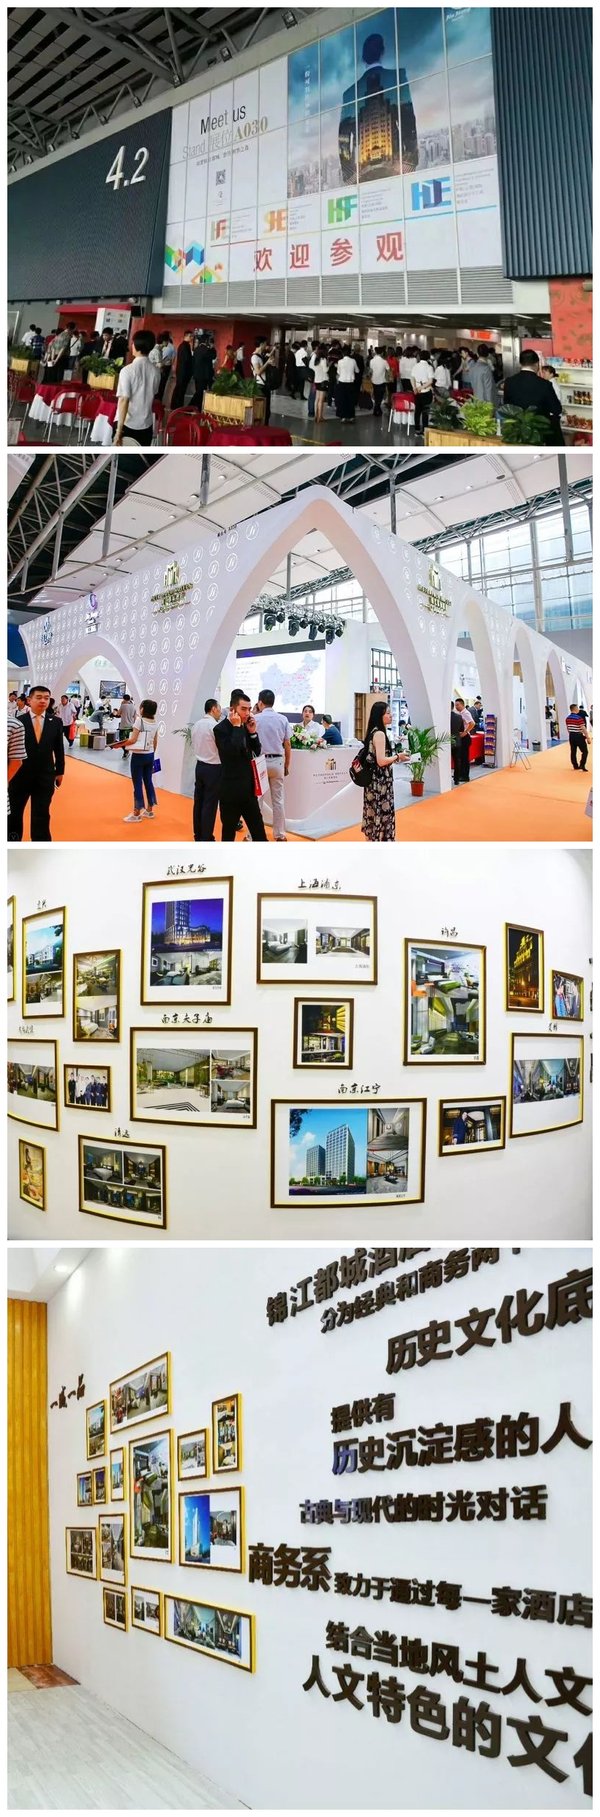 锦江都城酒店第150家酒店诞生 新一代产品样板房首次亮相HFE展